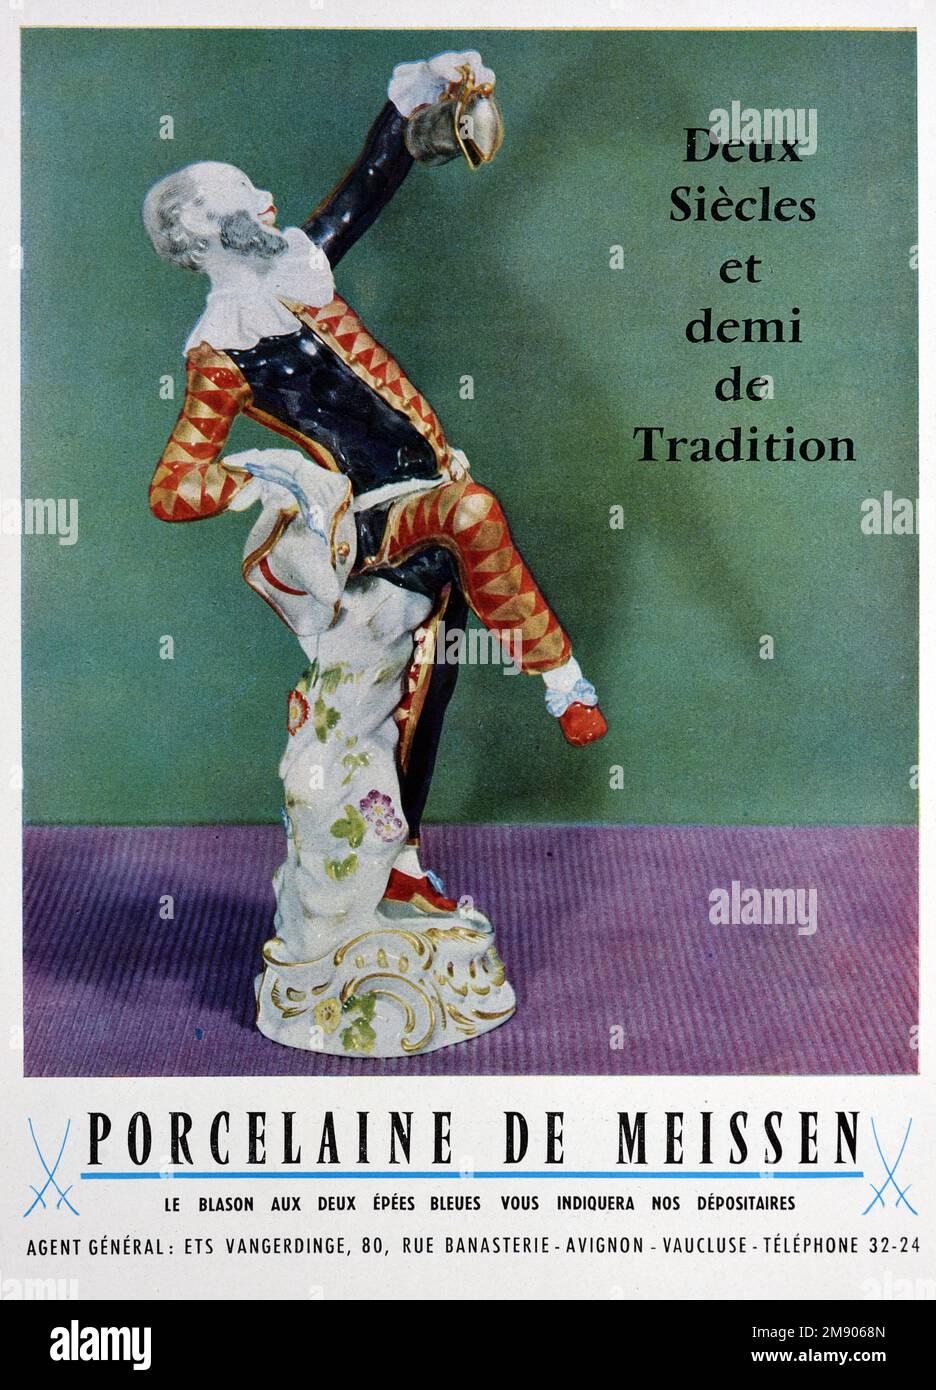 Vintage o antiguo anuncio, publicidad, publicidad o ilustración para porcelana de Meissen o Meissen China 1957 Foto de stock